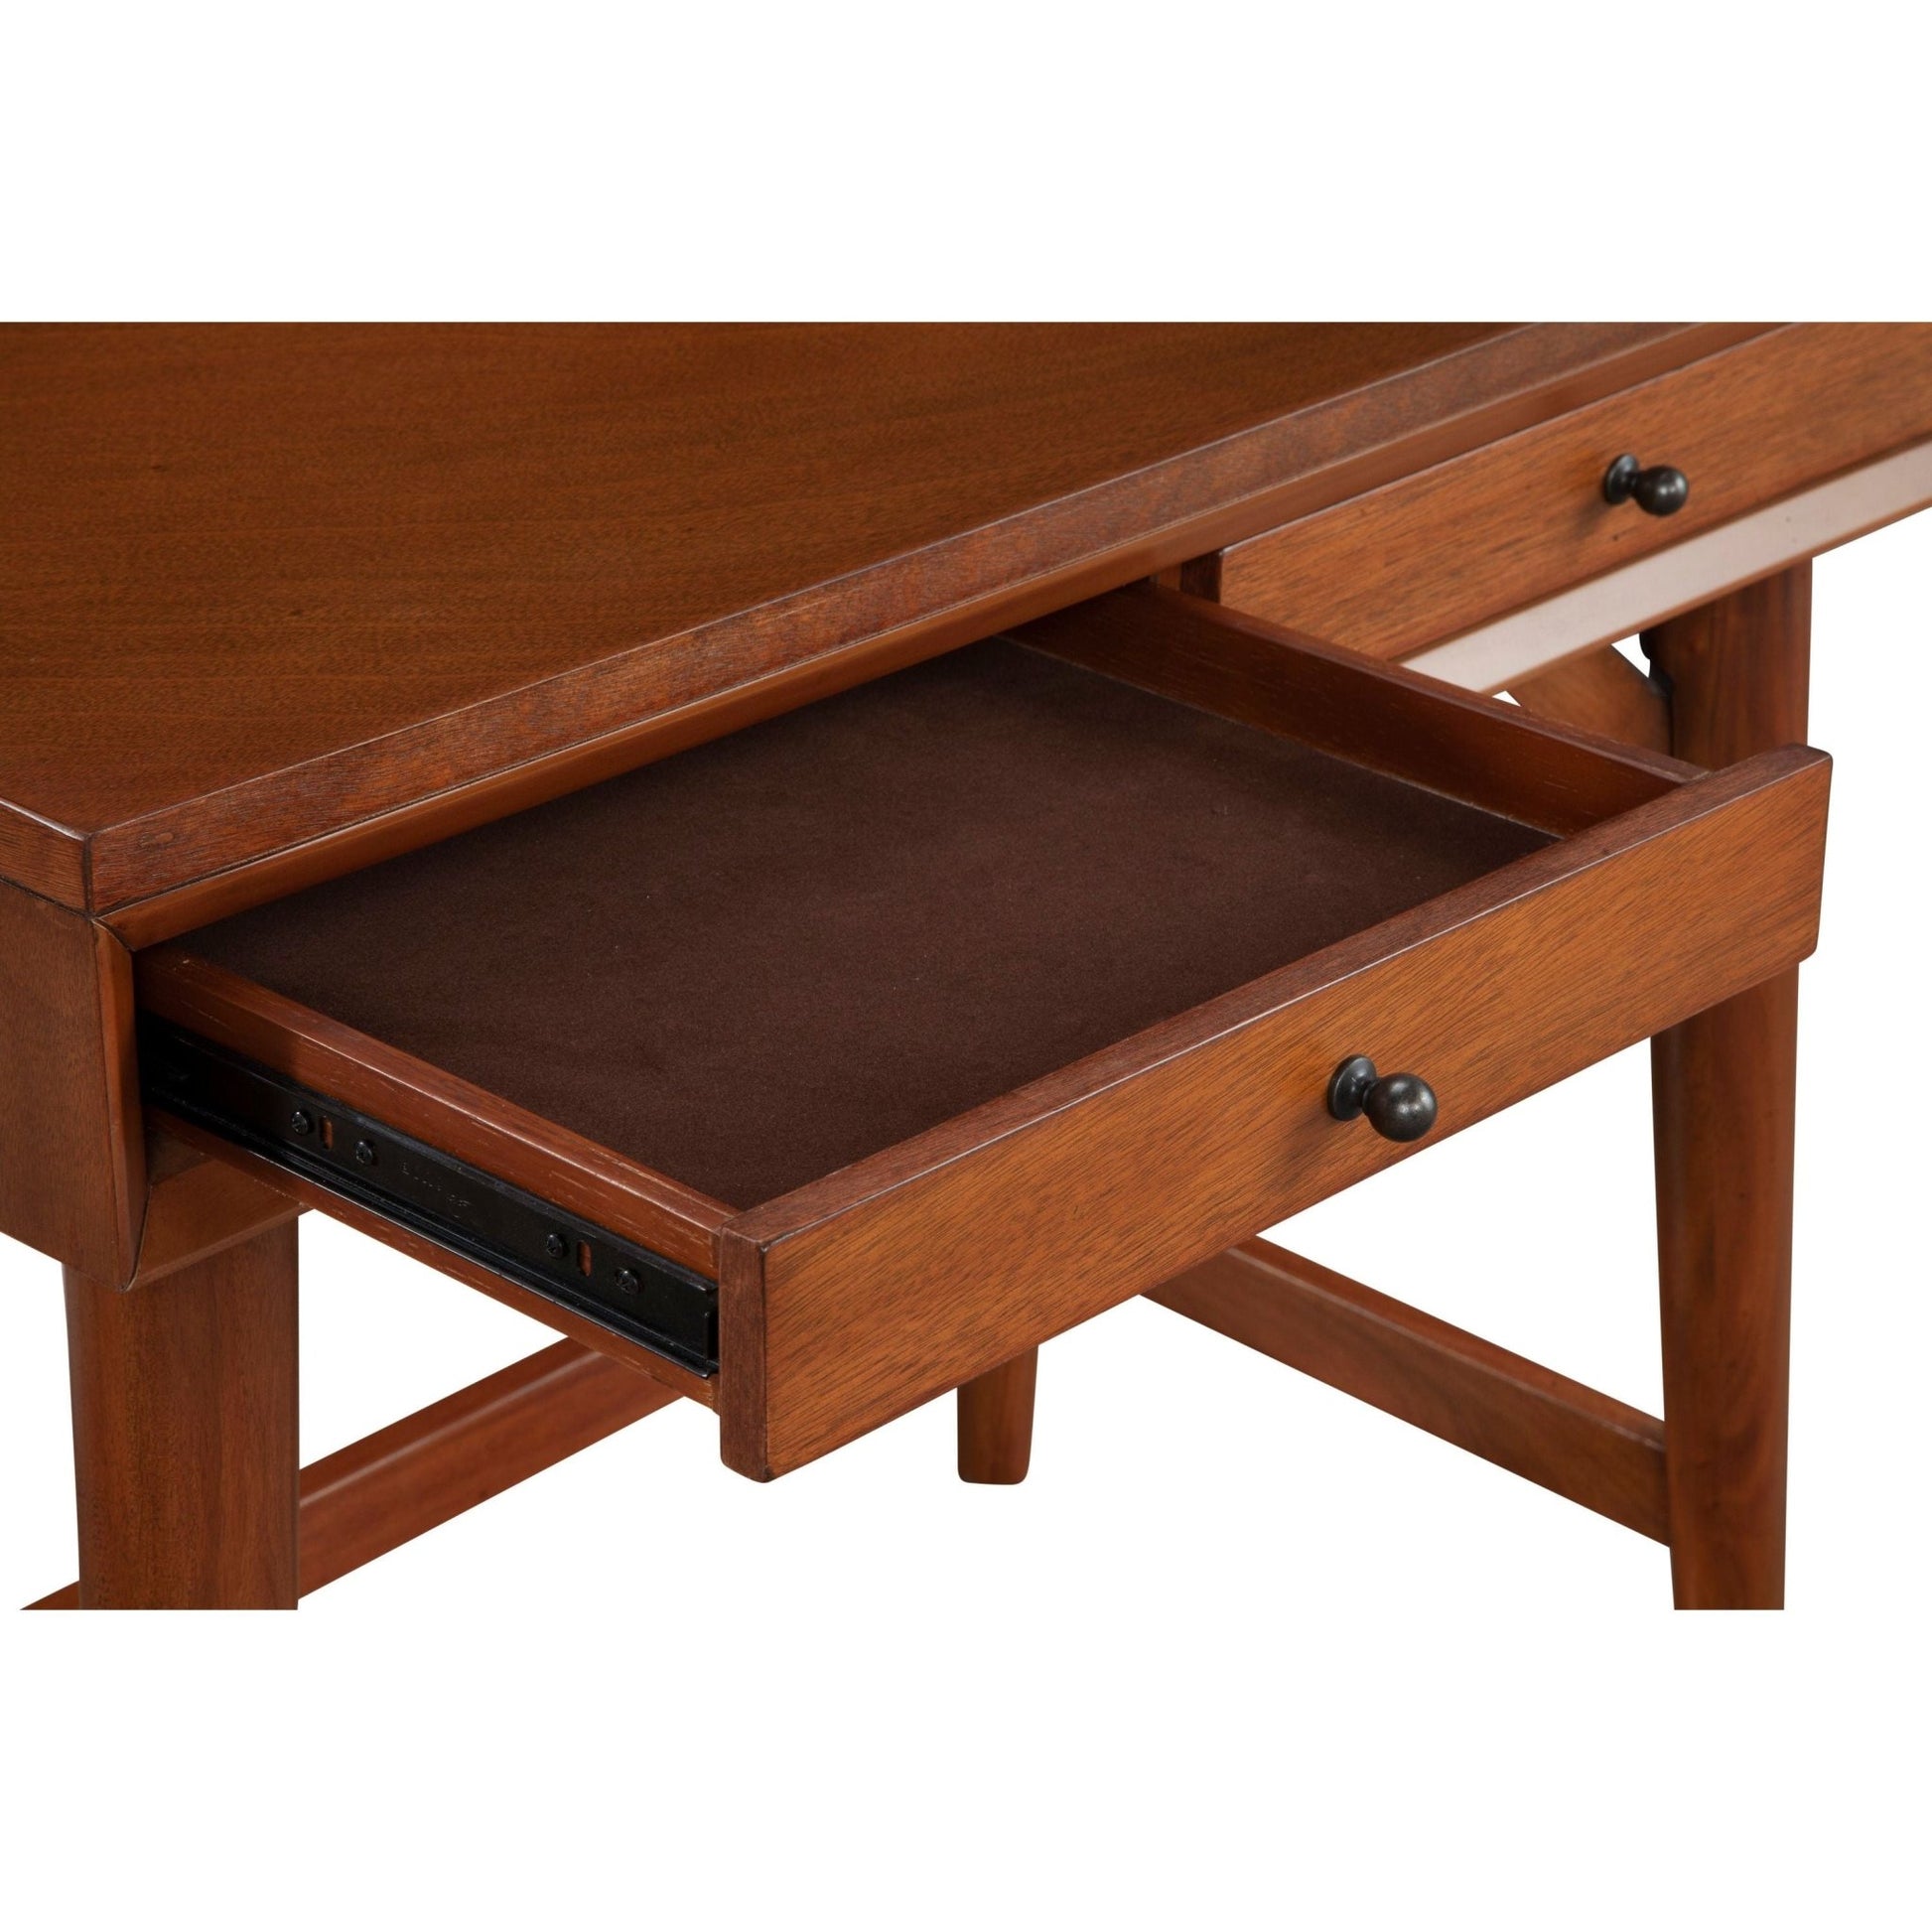 Flynn Mini Desk, Acorn - Alpine Furniture